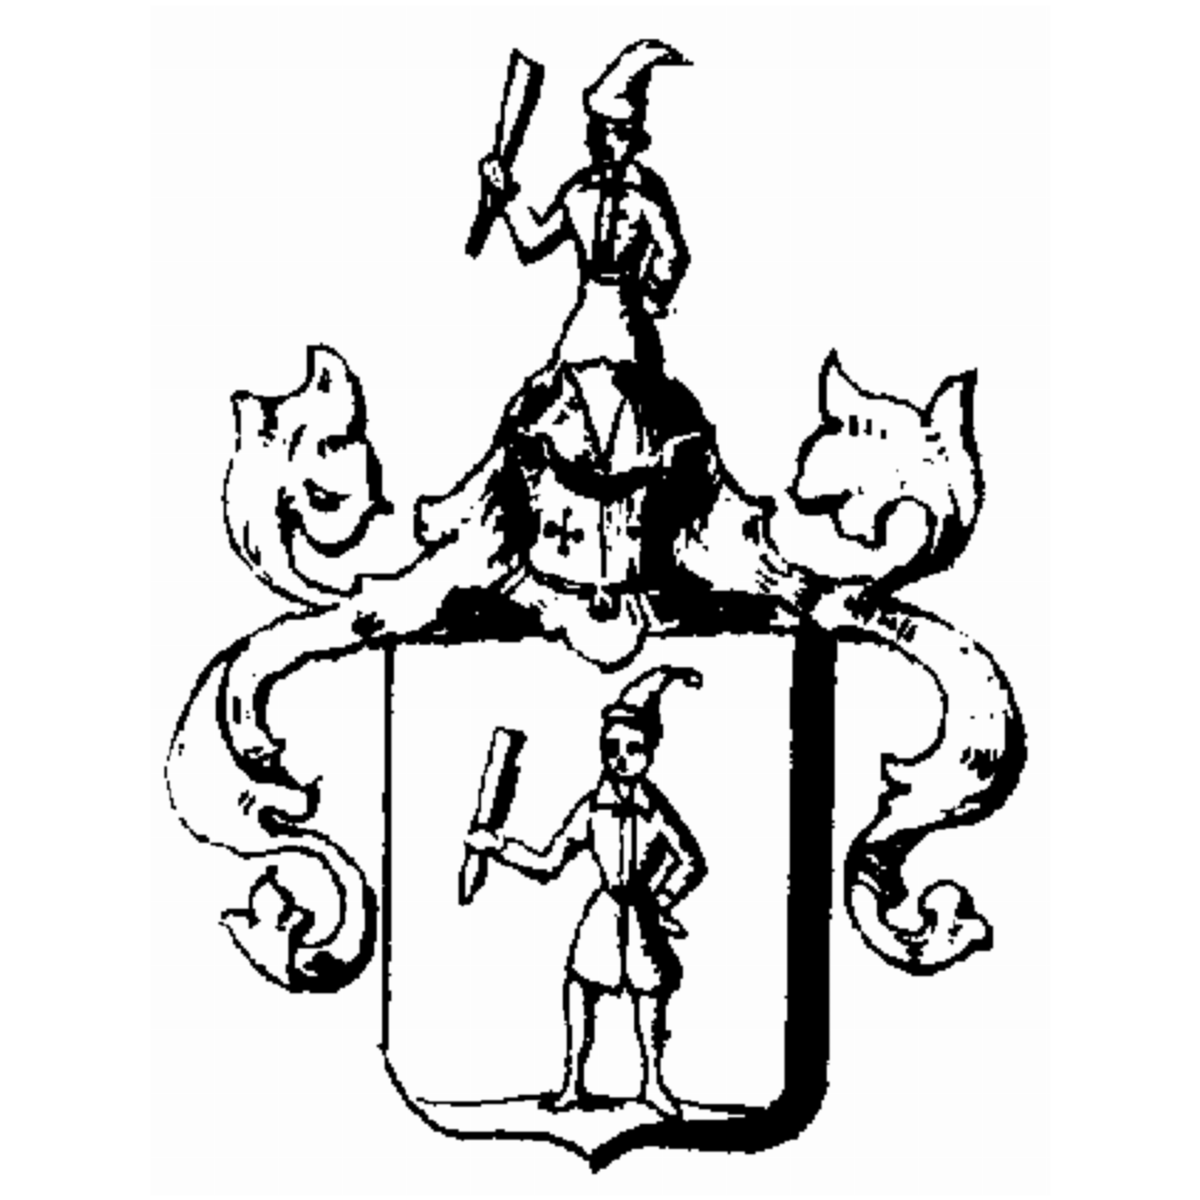 Wappen der Familie Dalchetti